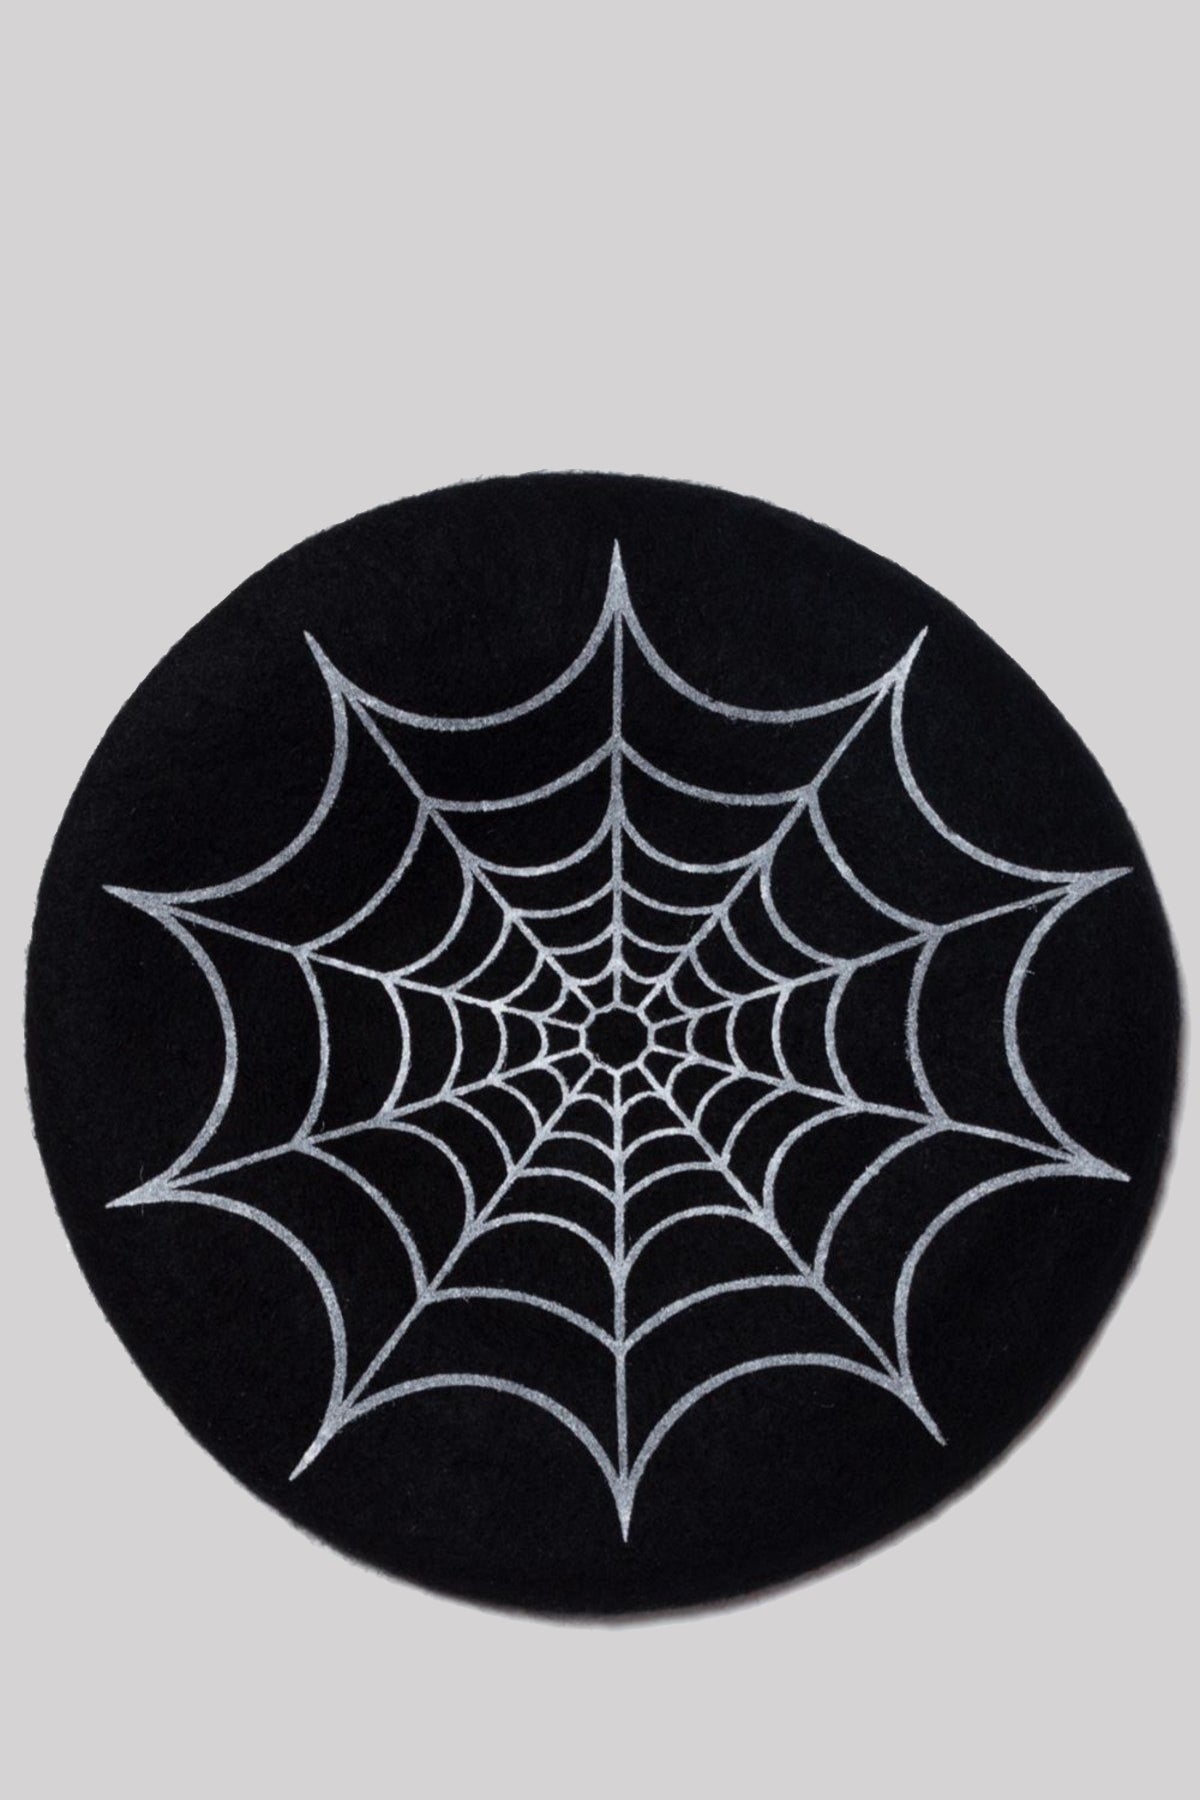 Kreepsville 666 Spider Web Beret Hat Gothic Accessory